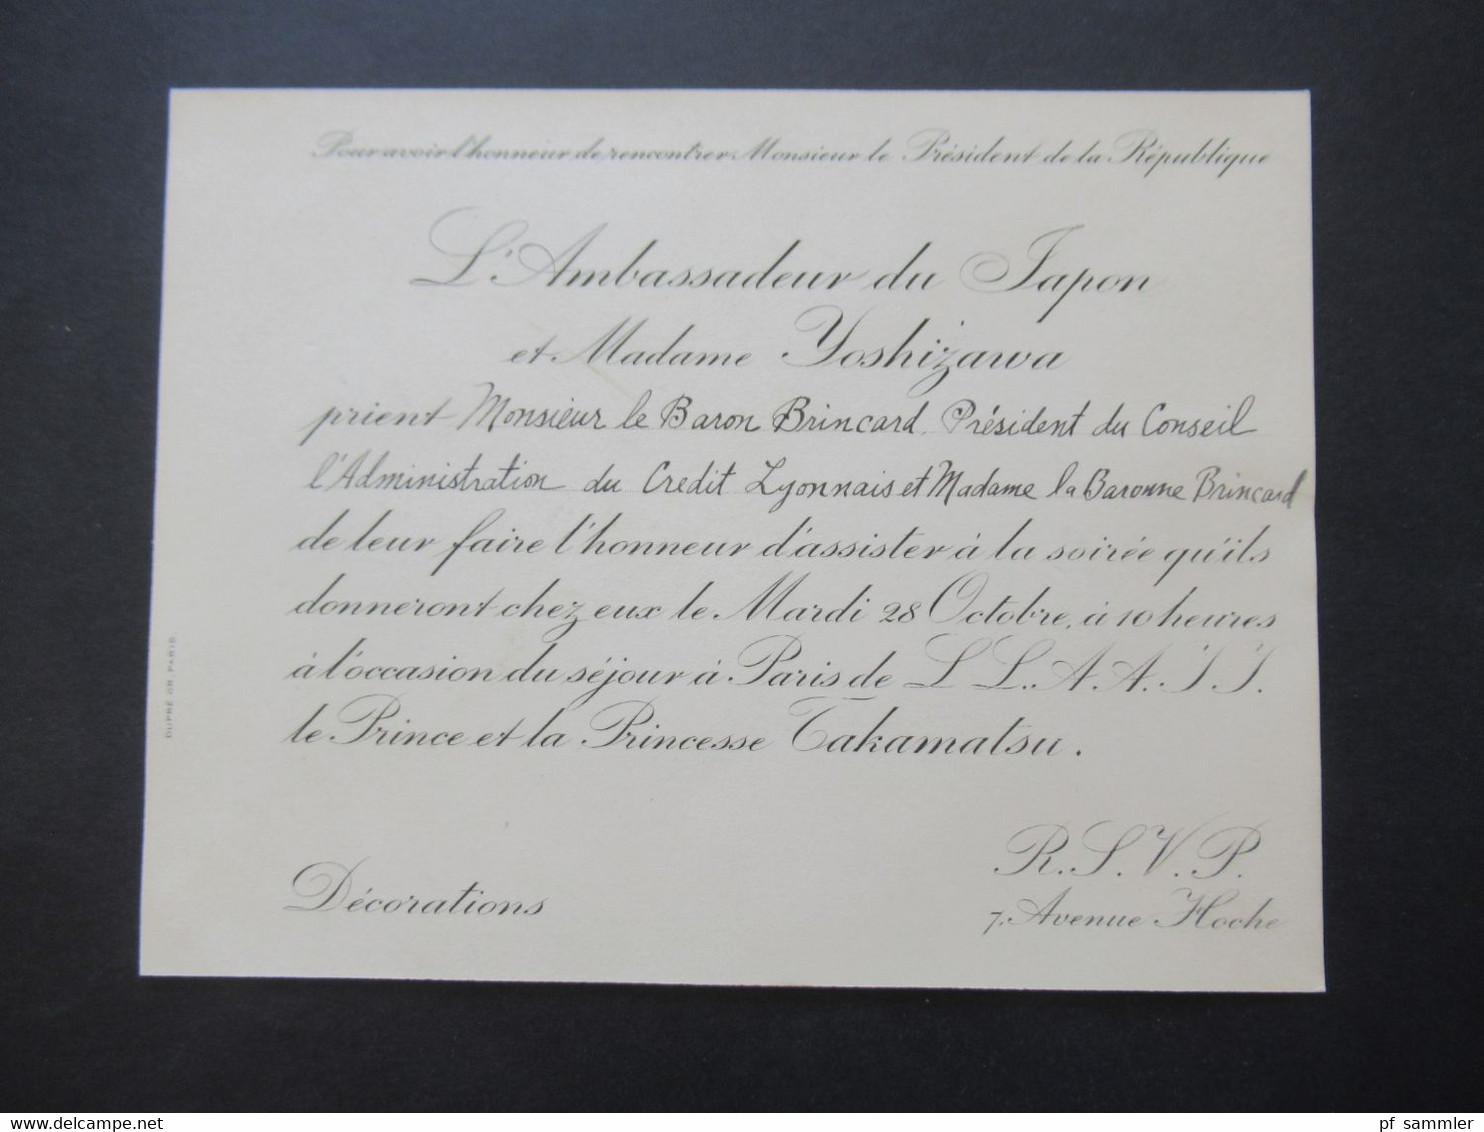 Frankreich 1930 Umschlag mit original Einladungskarte Ambassade Imperiale Du Japon Paris / Prince Takamatsu